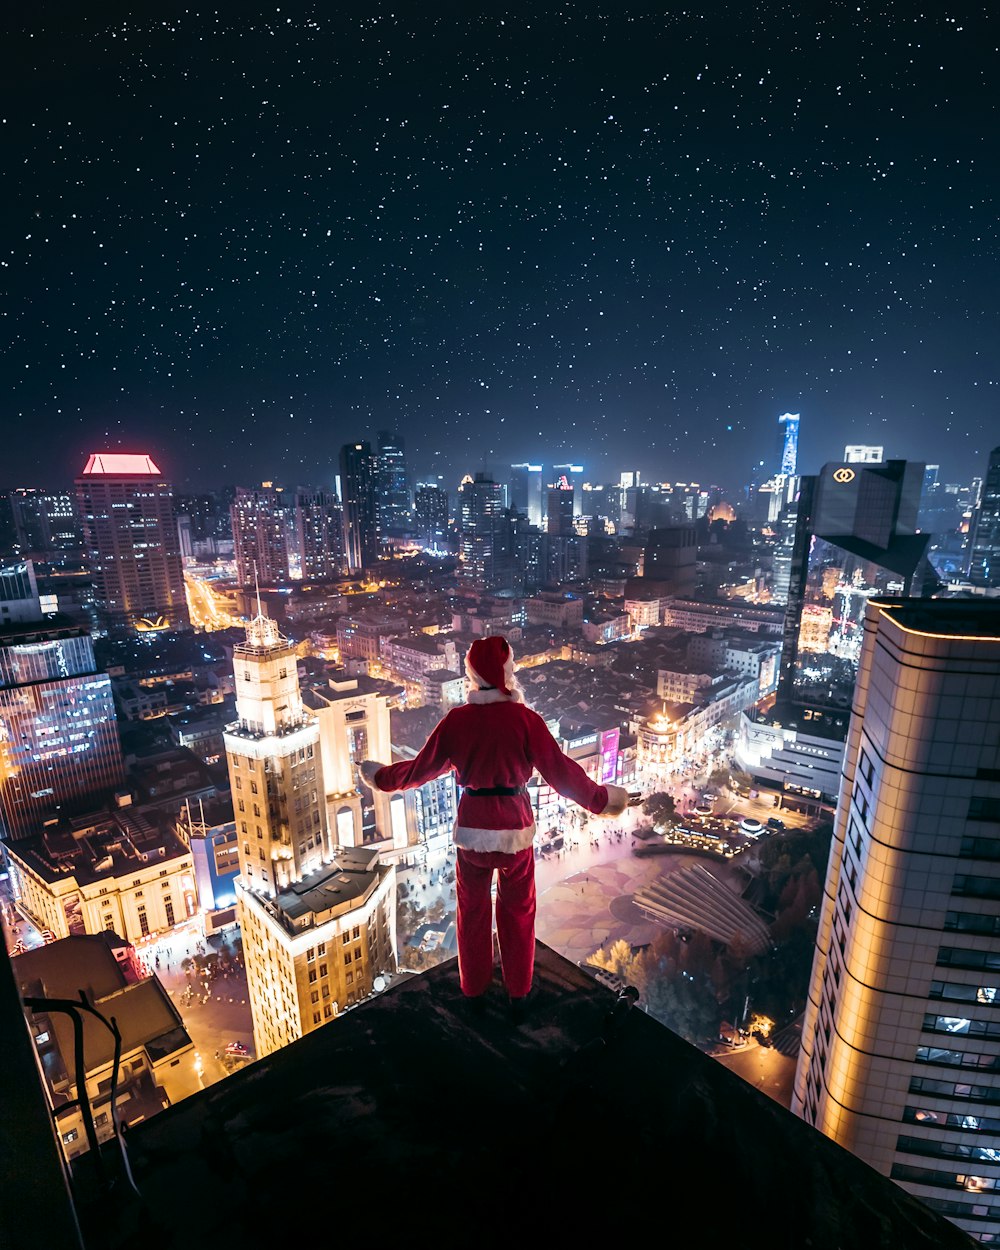 산타 클로스 복장을 입은 사람이 밤에 건물 가장자리에 서 있습니다.